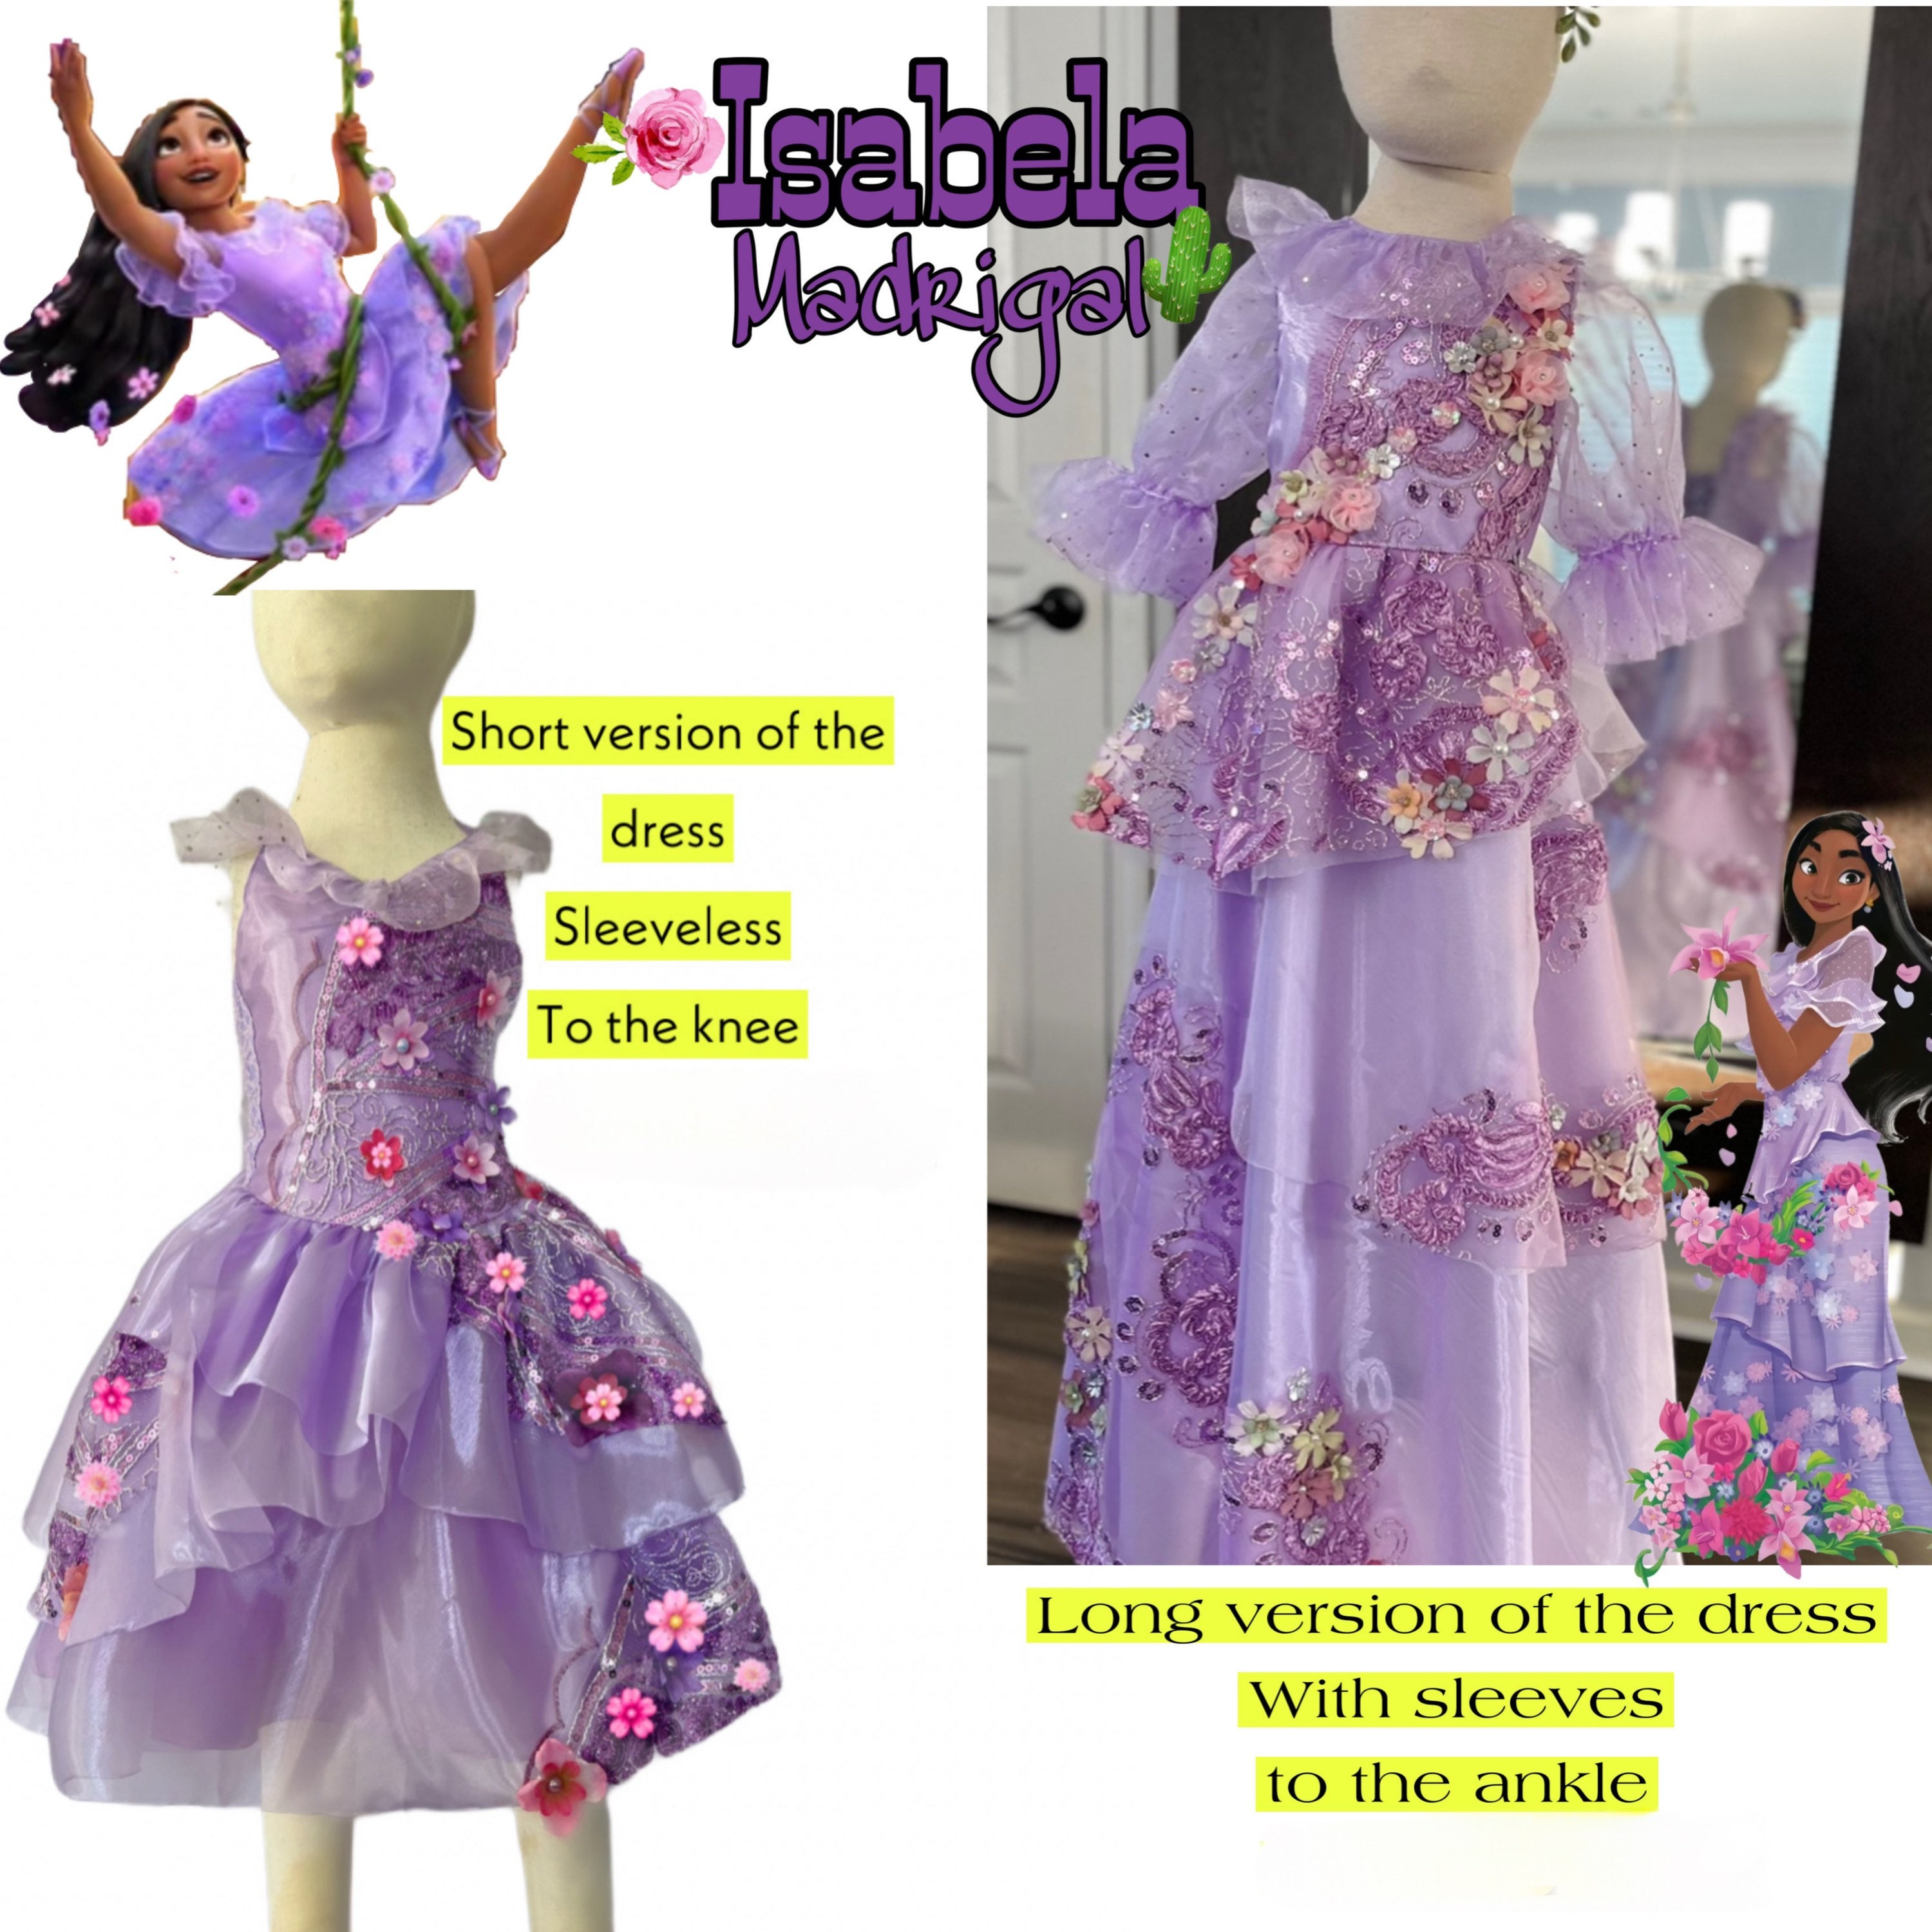 Encanto Isabela Dress for Girls. Deliver in 5 Business Days